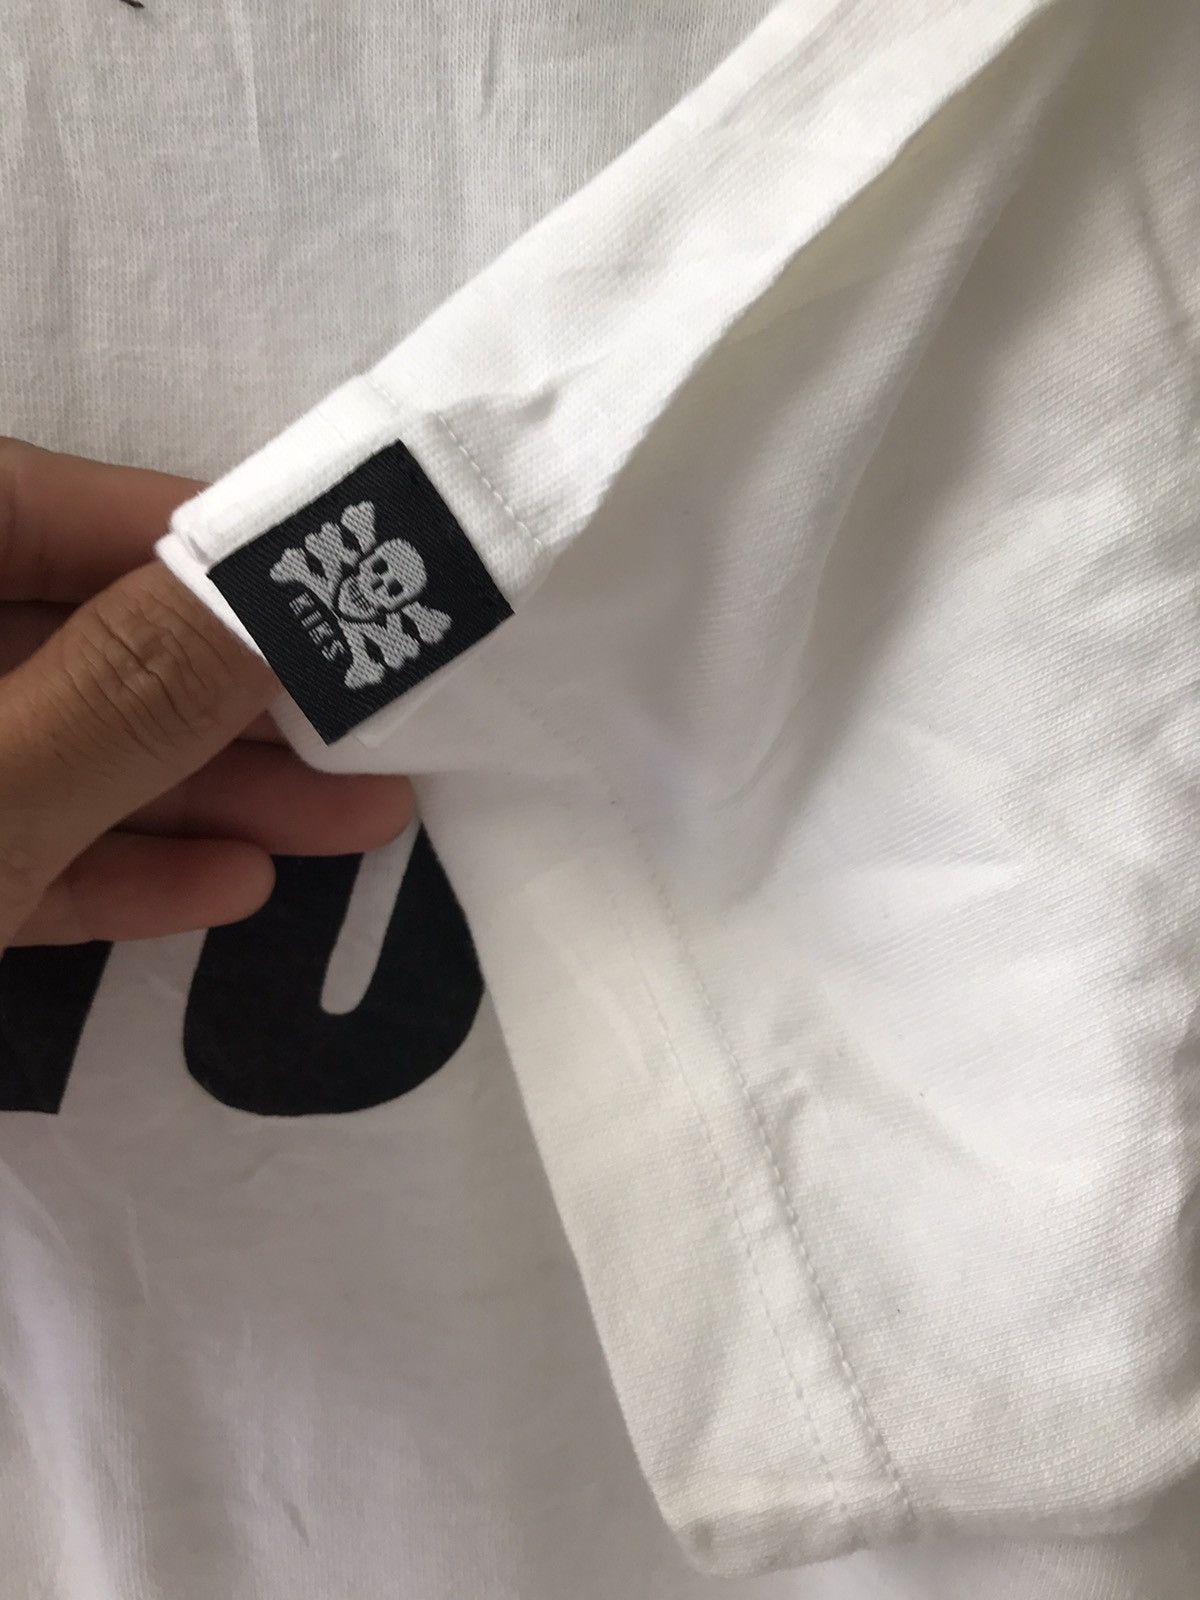 Kiks Tyo KIKS TYO Japanese Brand Spell Out Streetwear Shinichi Izaki Size US M / EU 48-50 / 2 - 5 Thumbnail